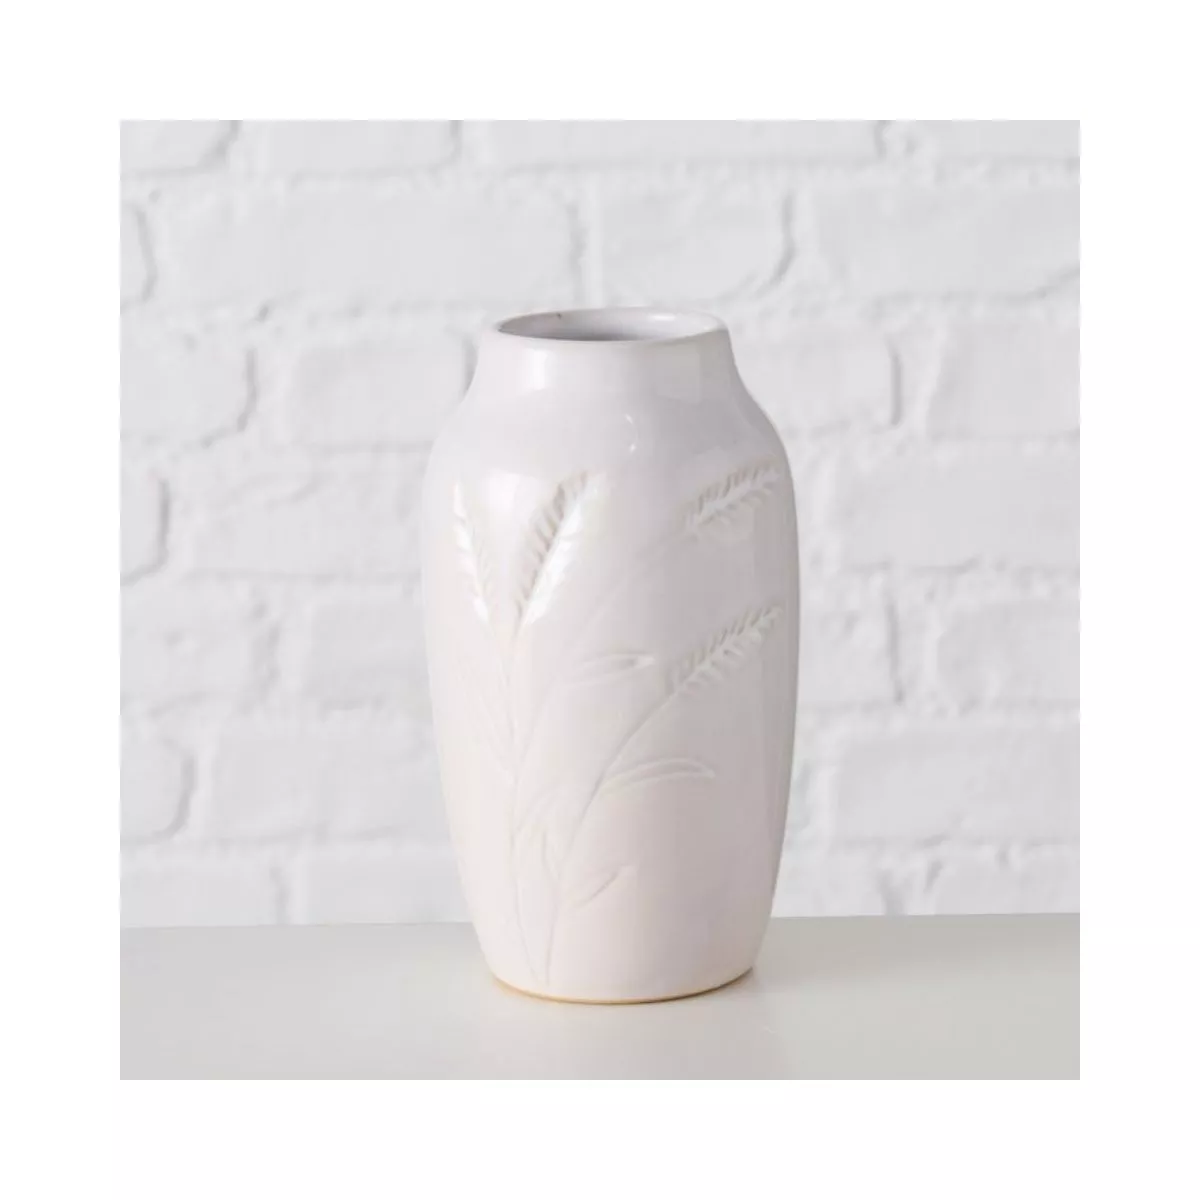 Vaza alba din ceramica 15 cm Jenna design spic Boltze 5